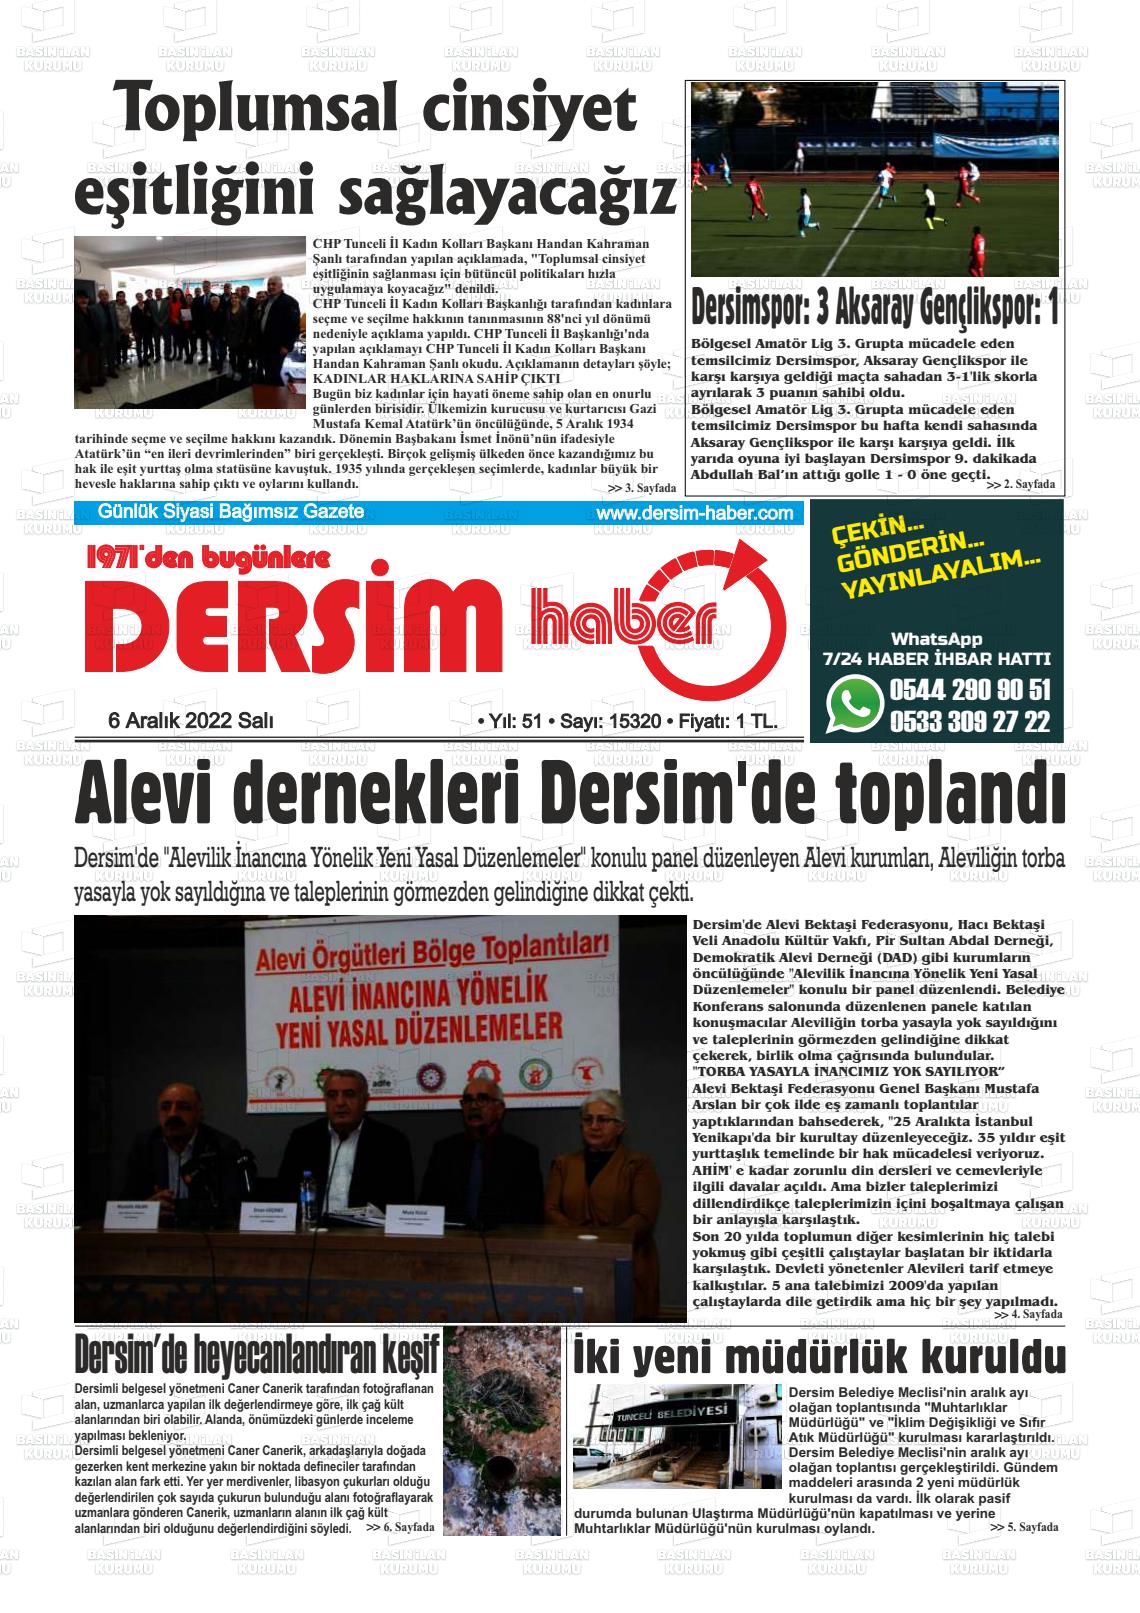 06 Aralık 2022 DERSİM HABER Gazete Manşeti